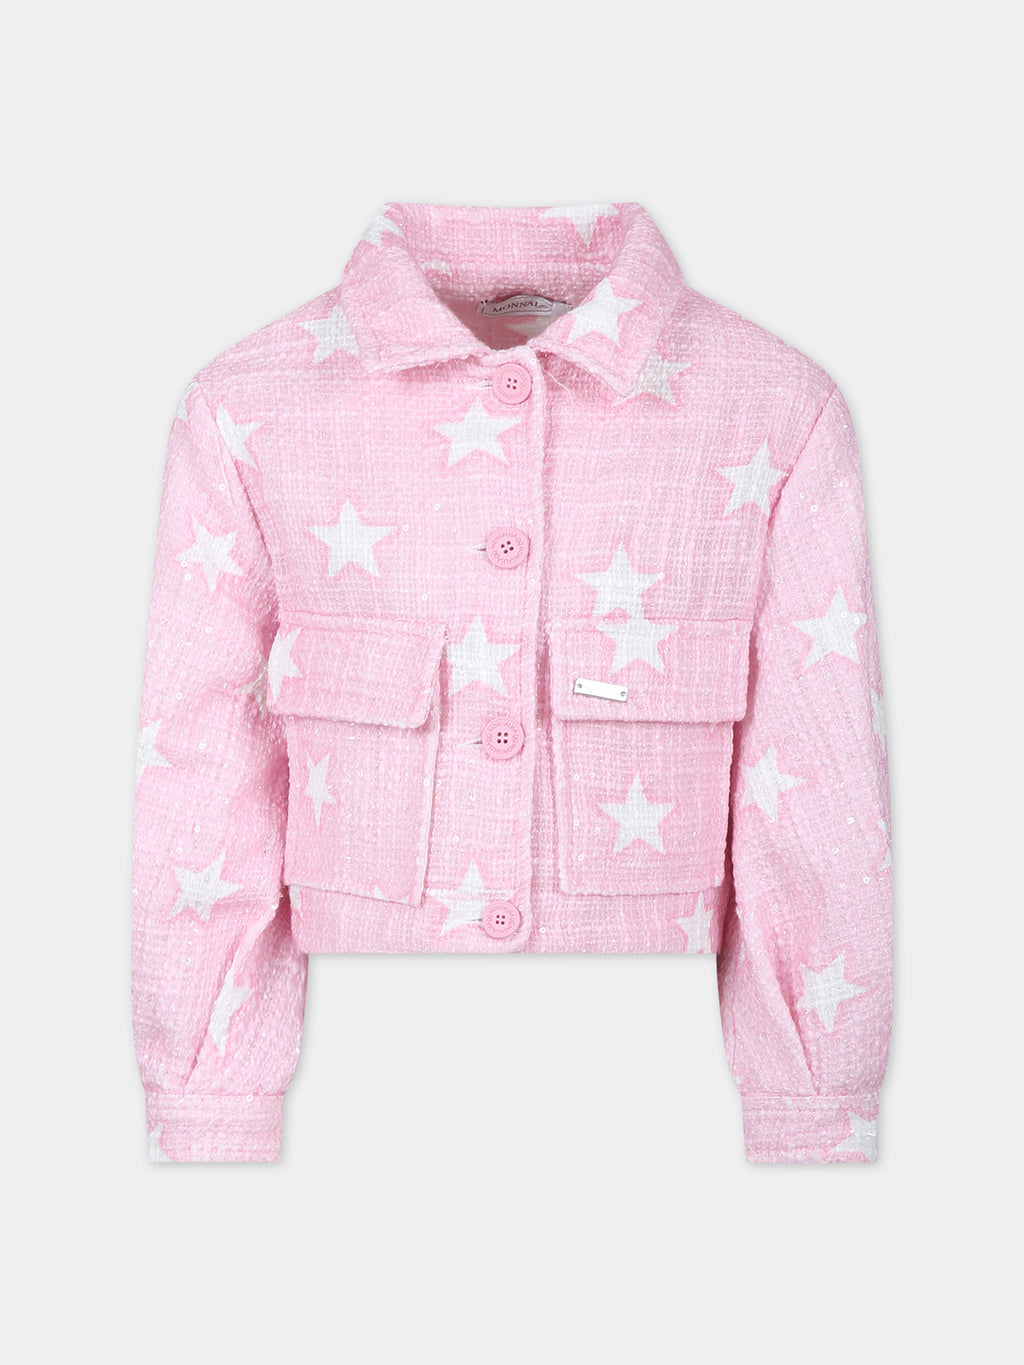 Giubbotto di jeans rosa per bambina con stelle